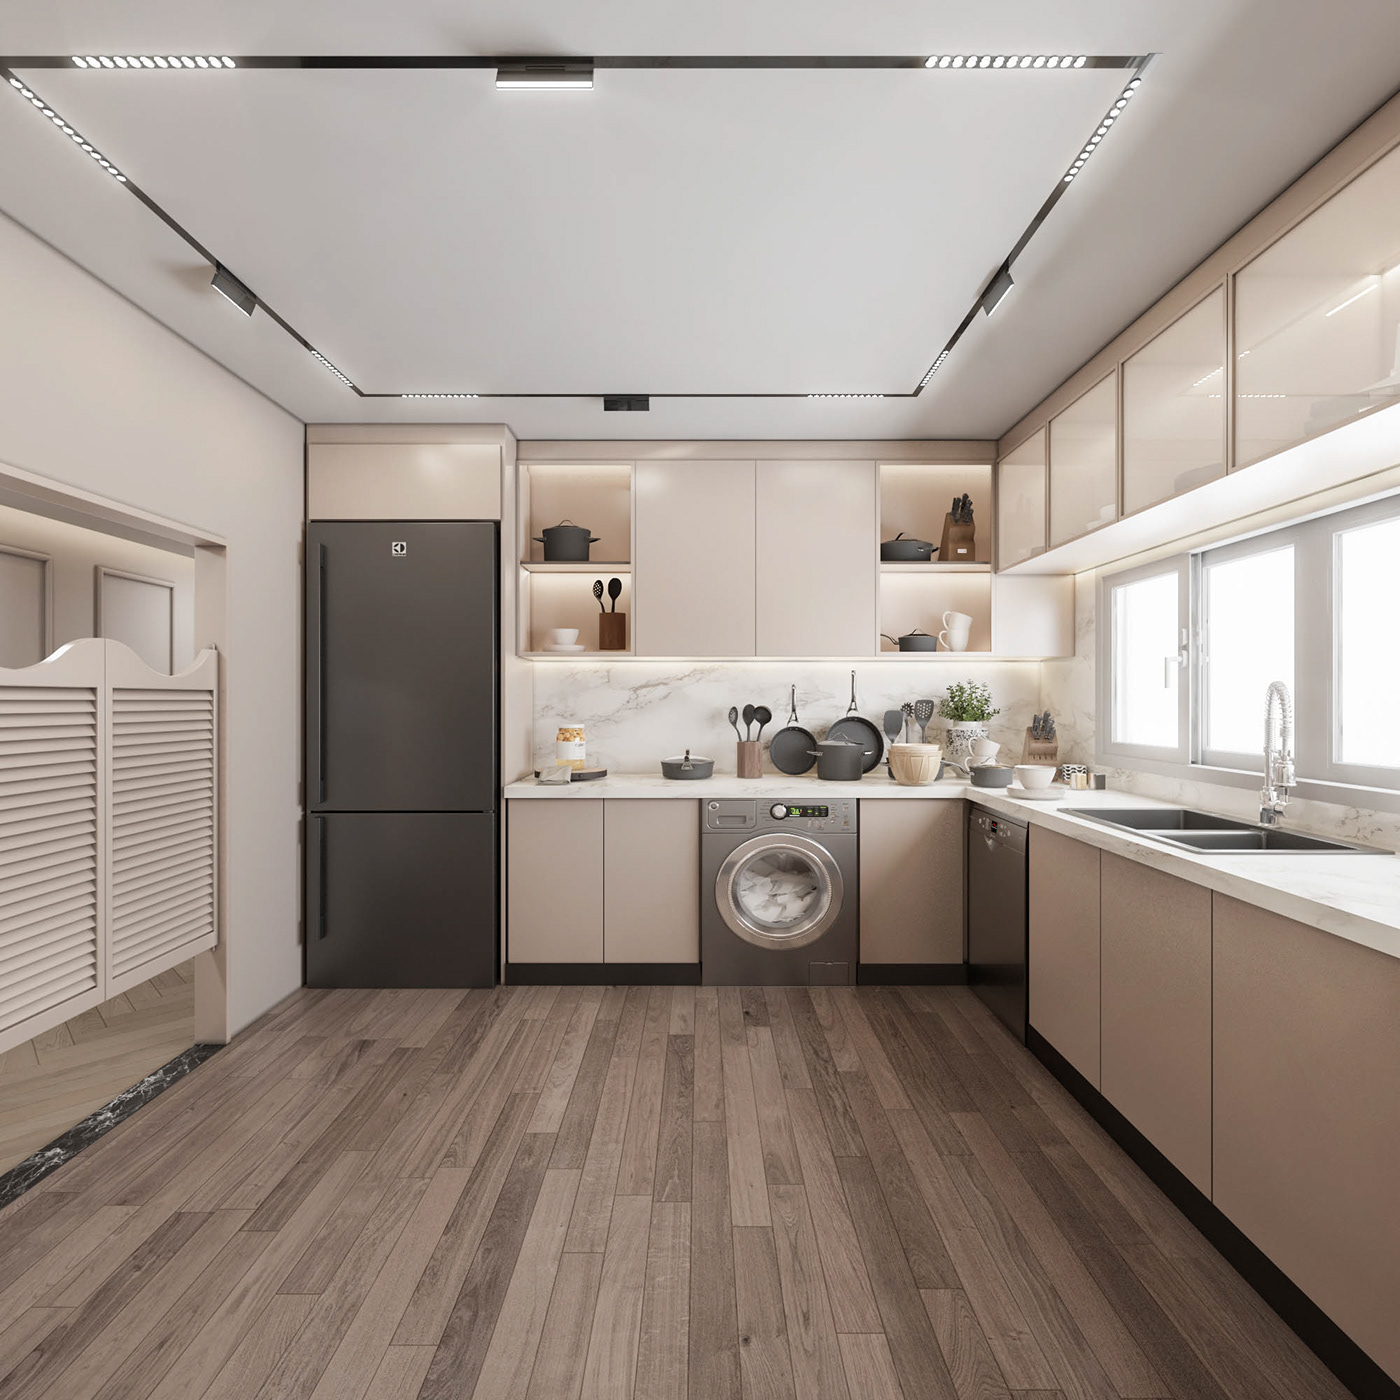 Interior design kitchen interior design  3ds max vray visualization modern Render 3D